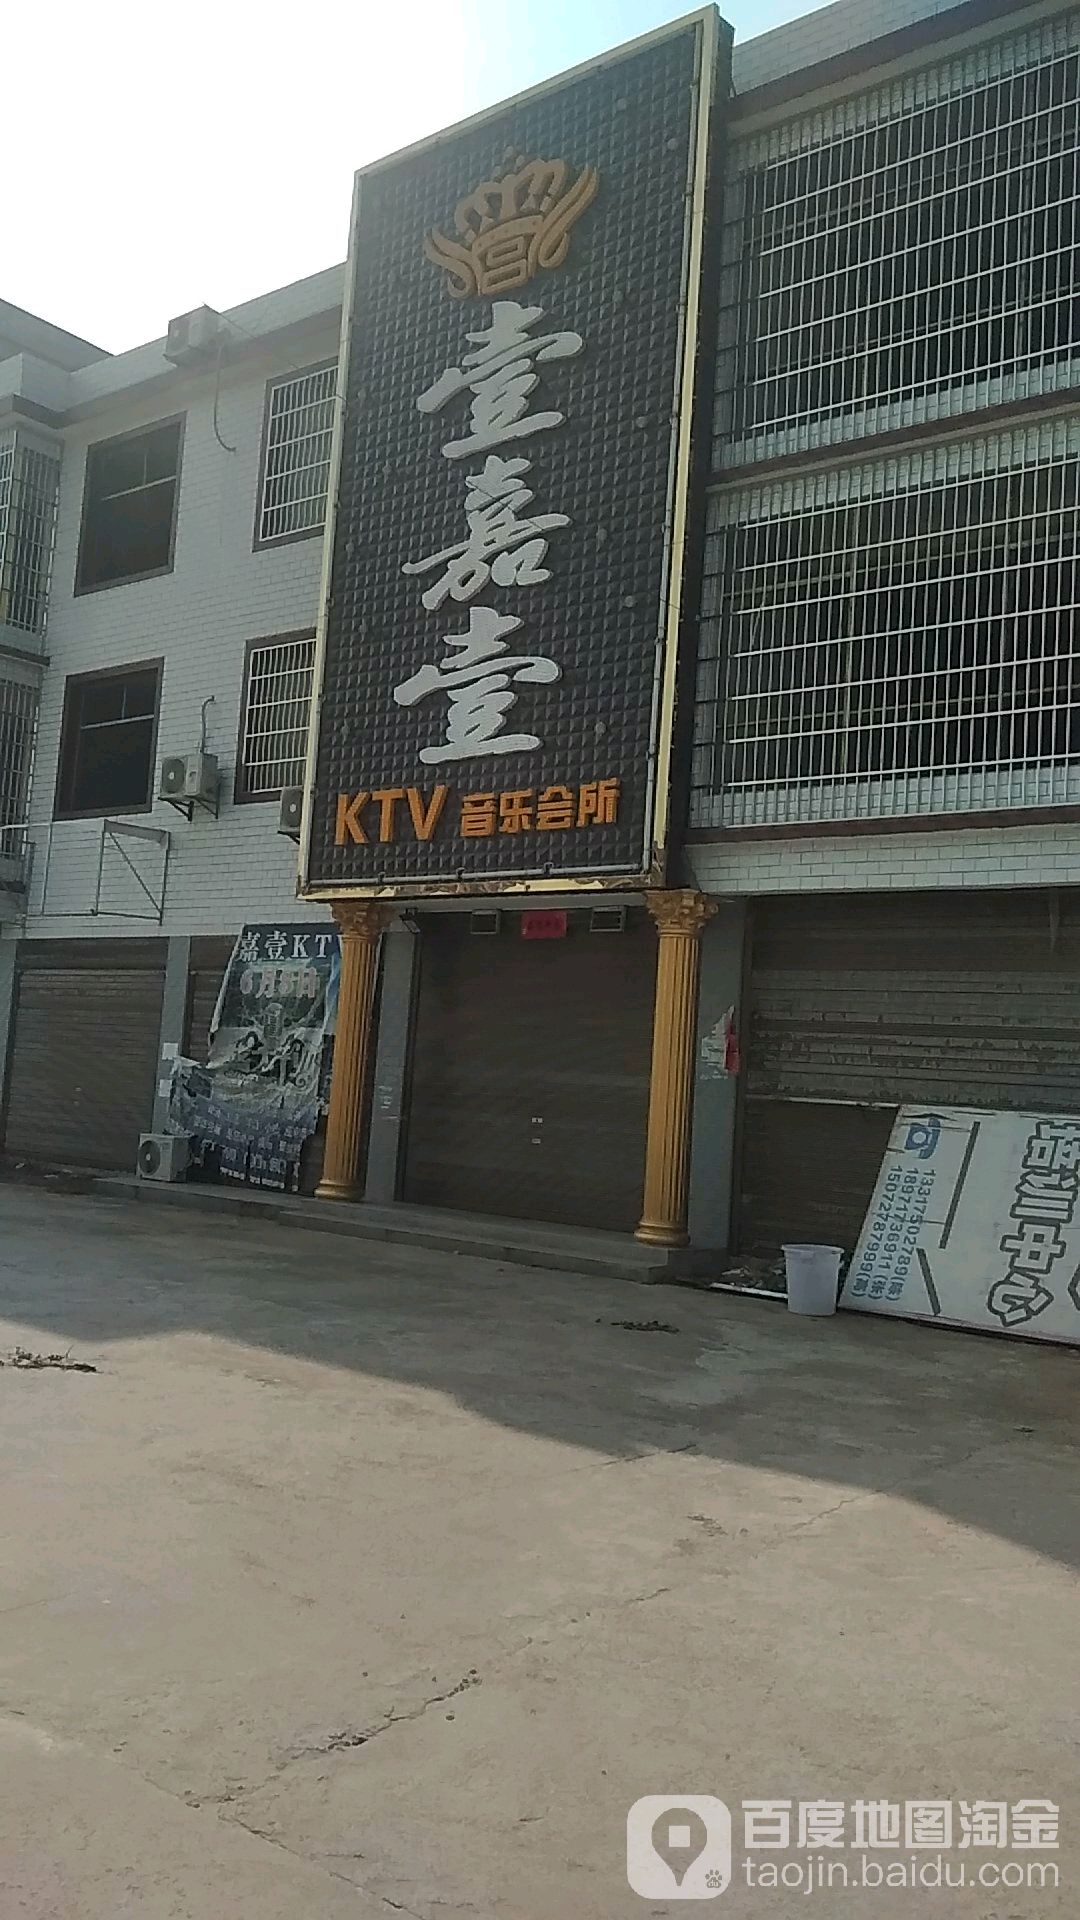 壹嘉壹KTV音乐会所